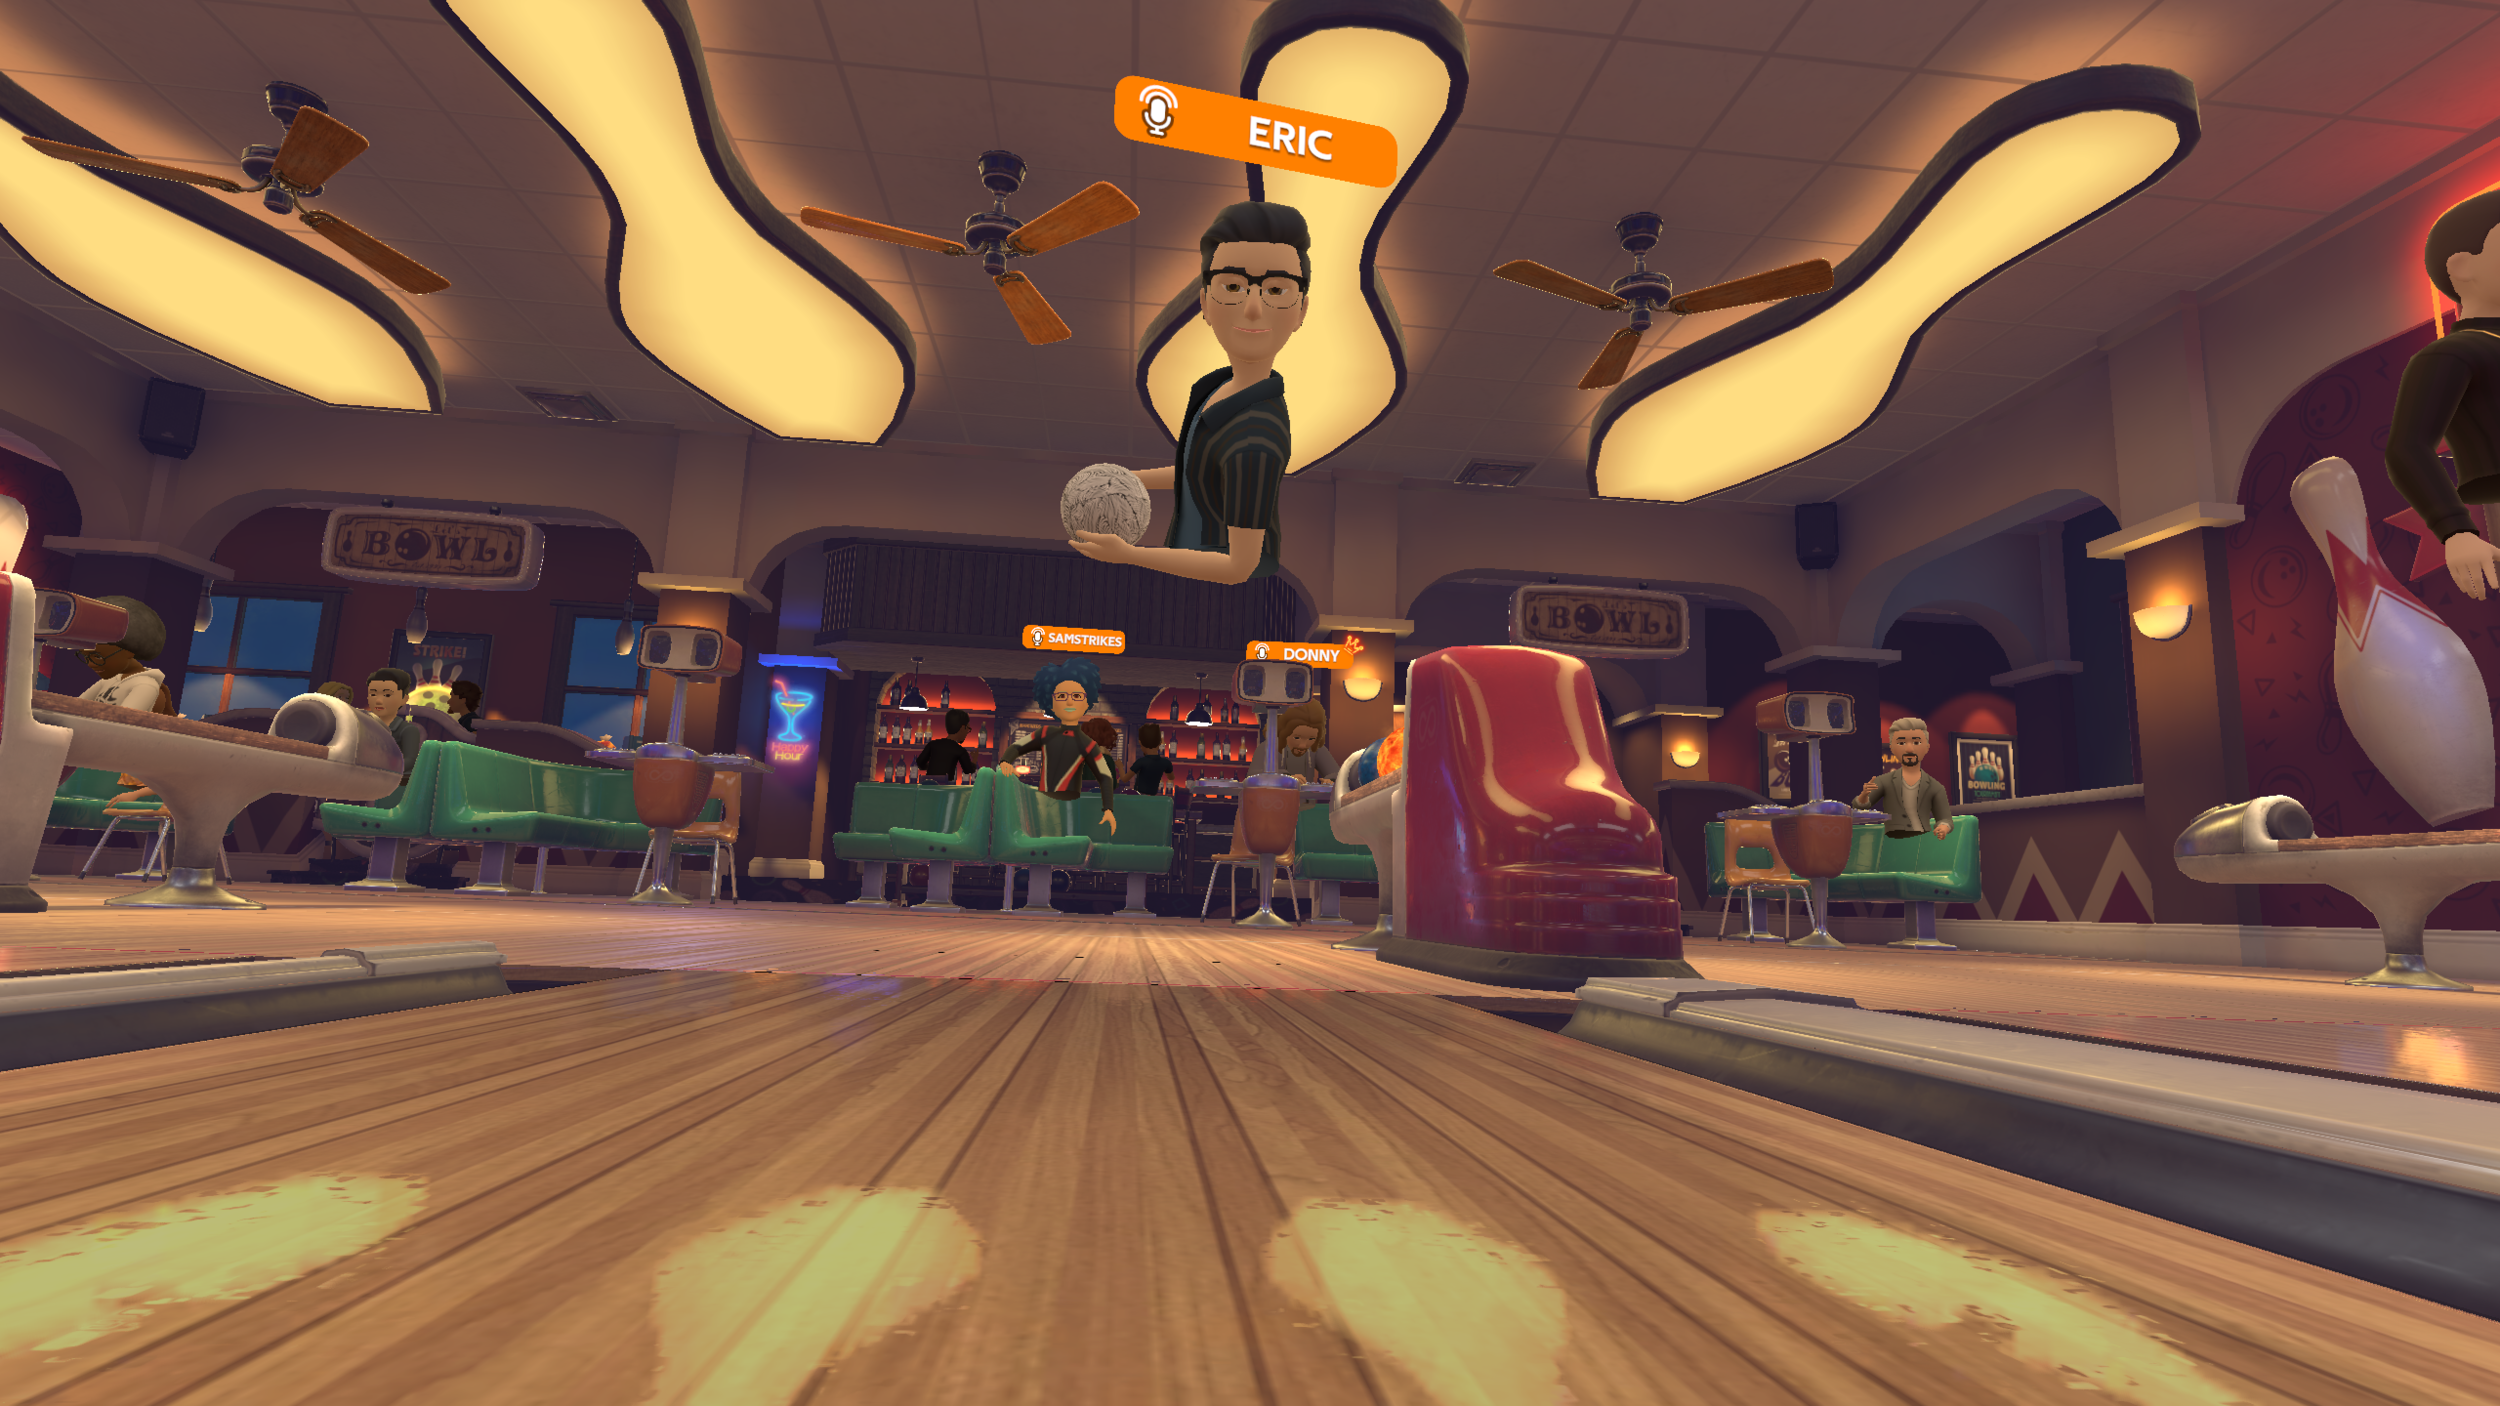 CNET names ForeVR Bowl “Best VR bowling” — ForeVR Games